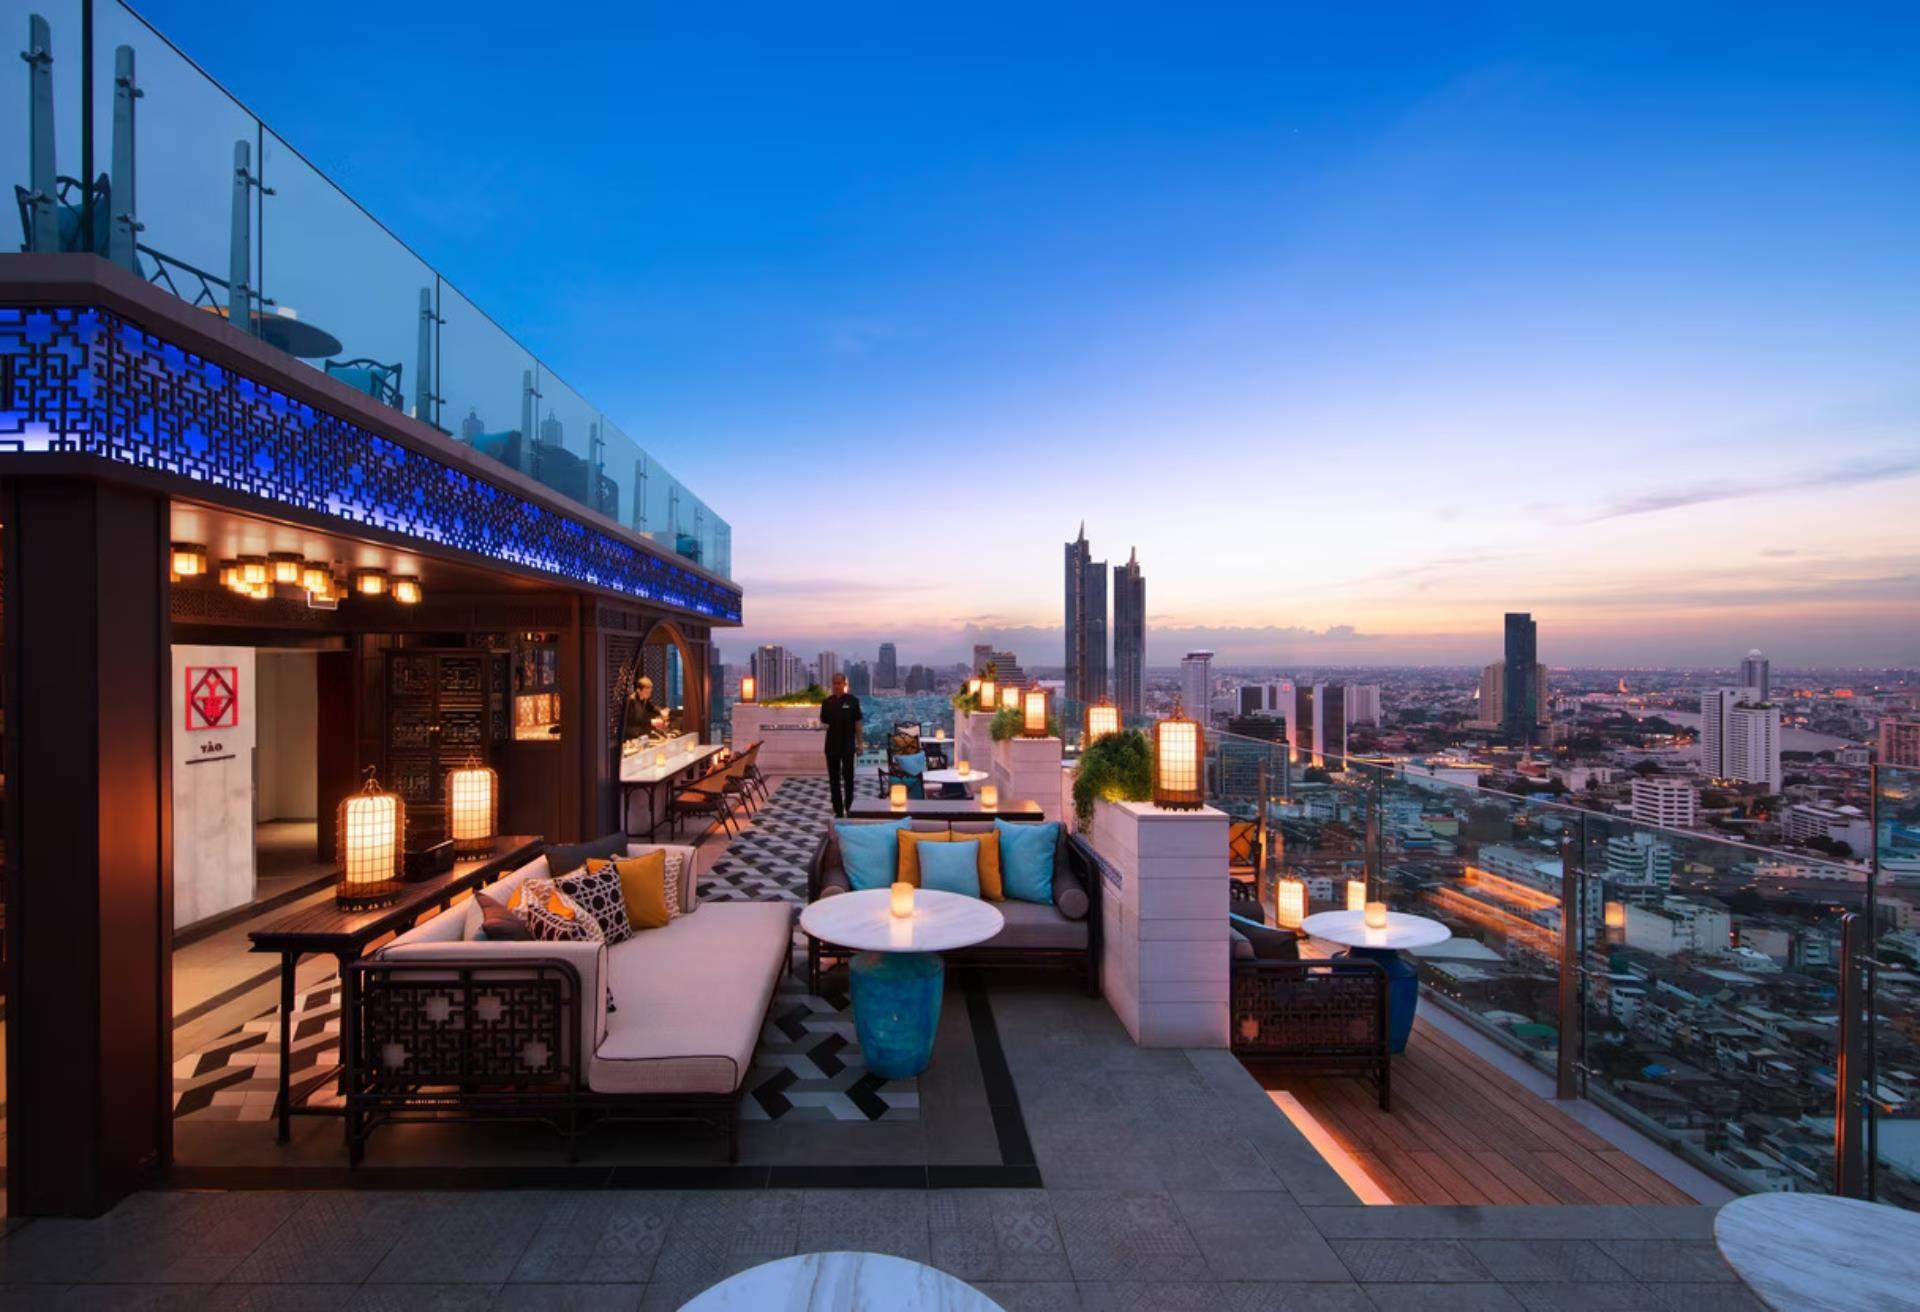 蘇拉翁塞曼谷萬豪酒店,曼谷住宿,曼谷住宿推介,曼谷酒店推介,曼谷高空酒吧酒店, 曼谷酒店酒吧,曼谷sky bar,Bangkok Marriott Hotel The Surawongse